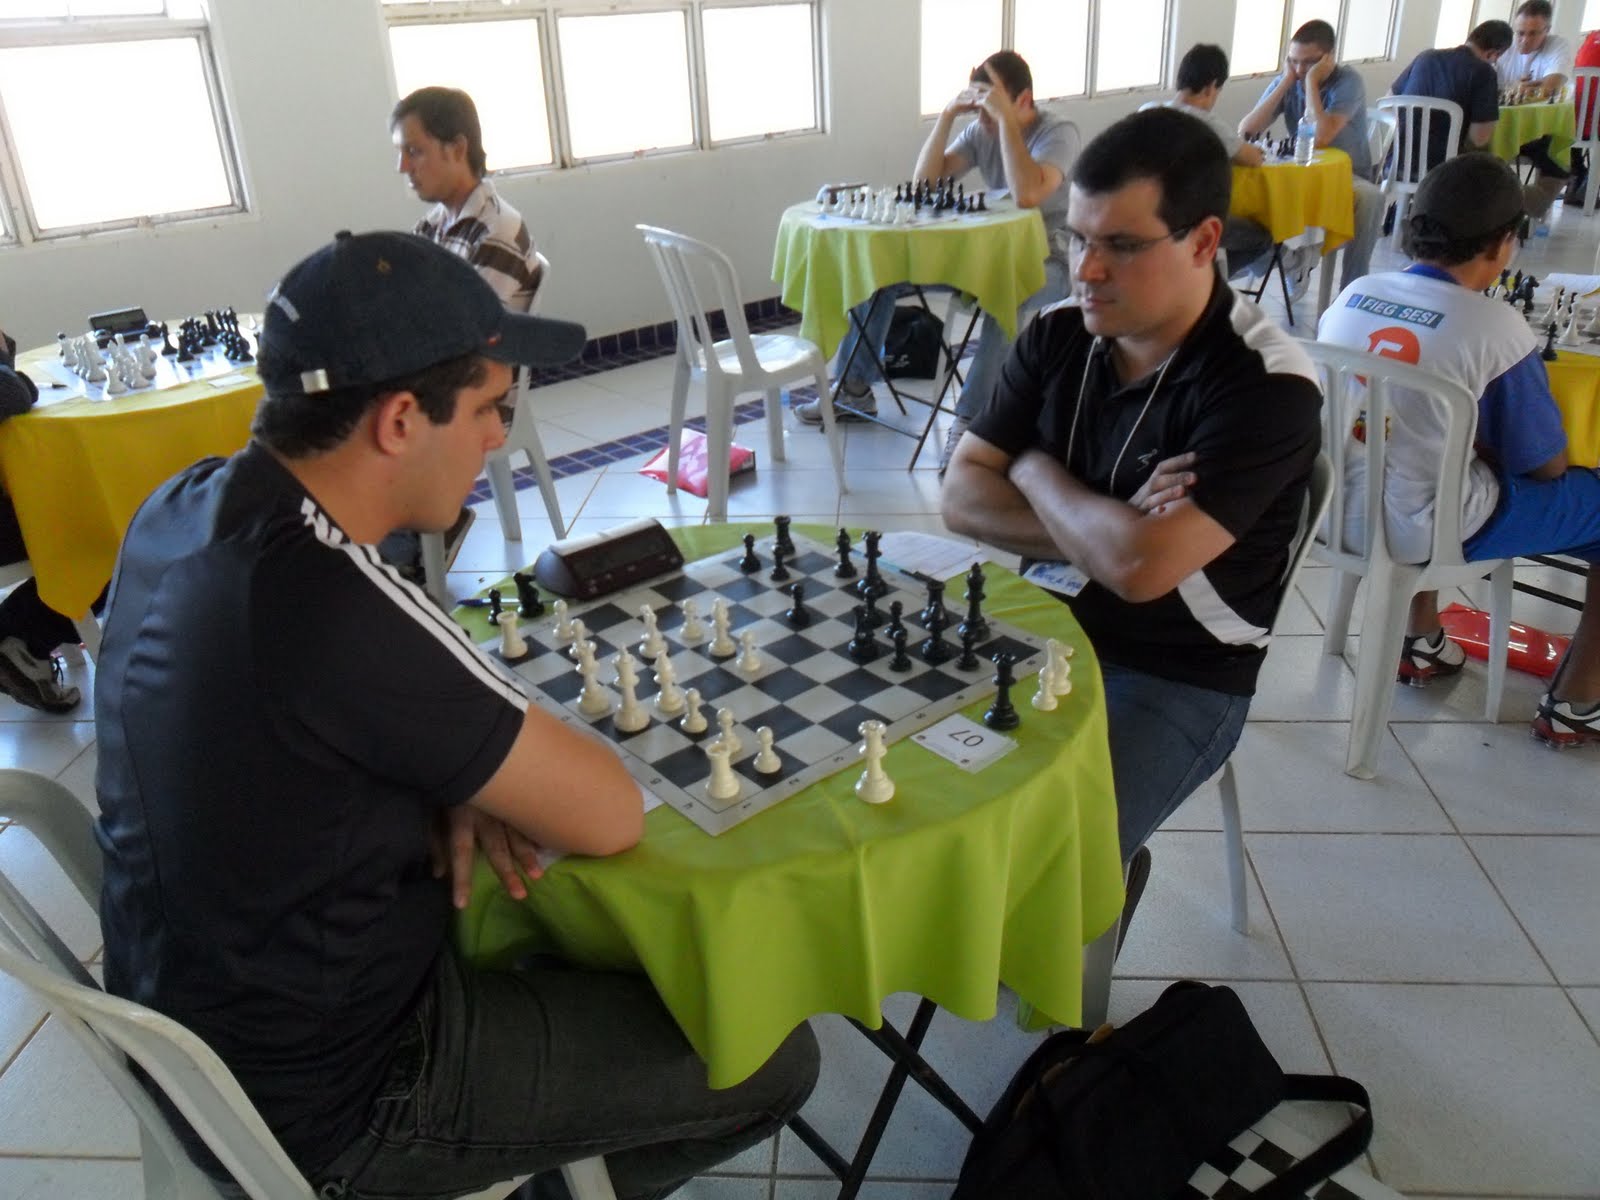 Campeonato de Xadrez no Piauí levará vencedores para disputa internacional